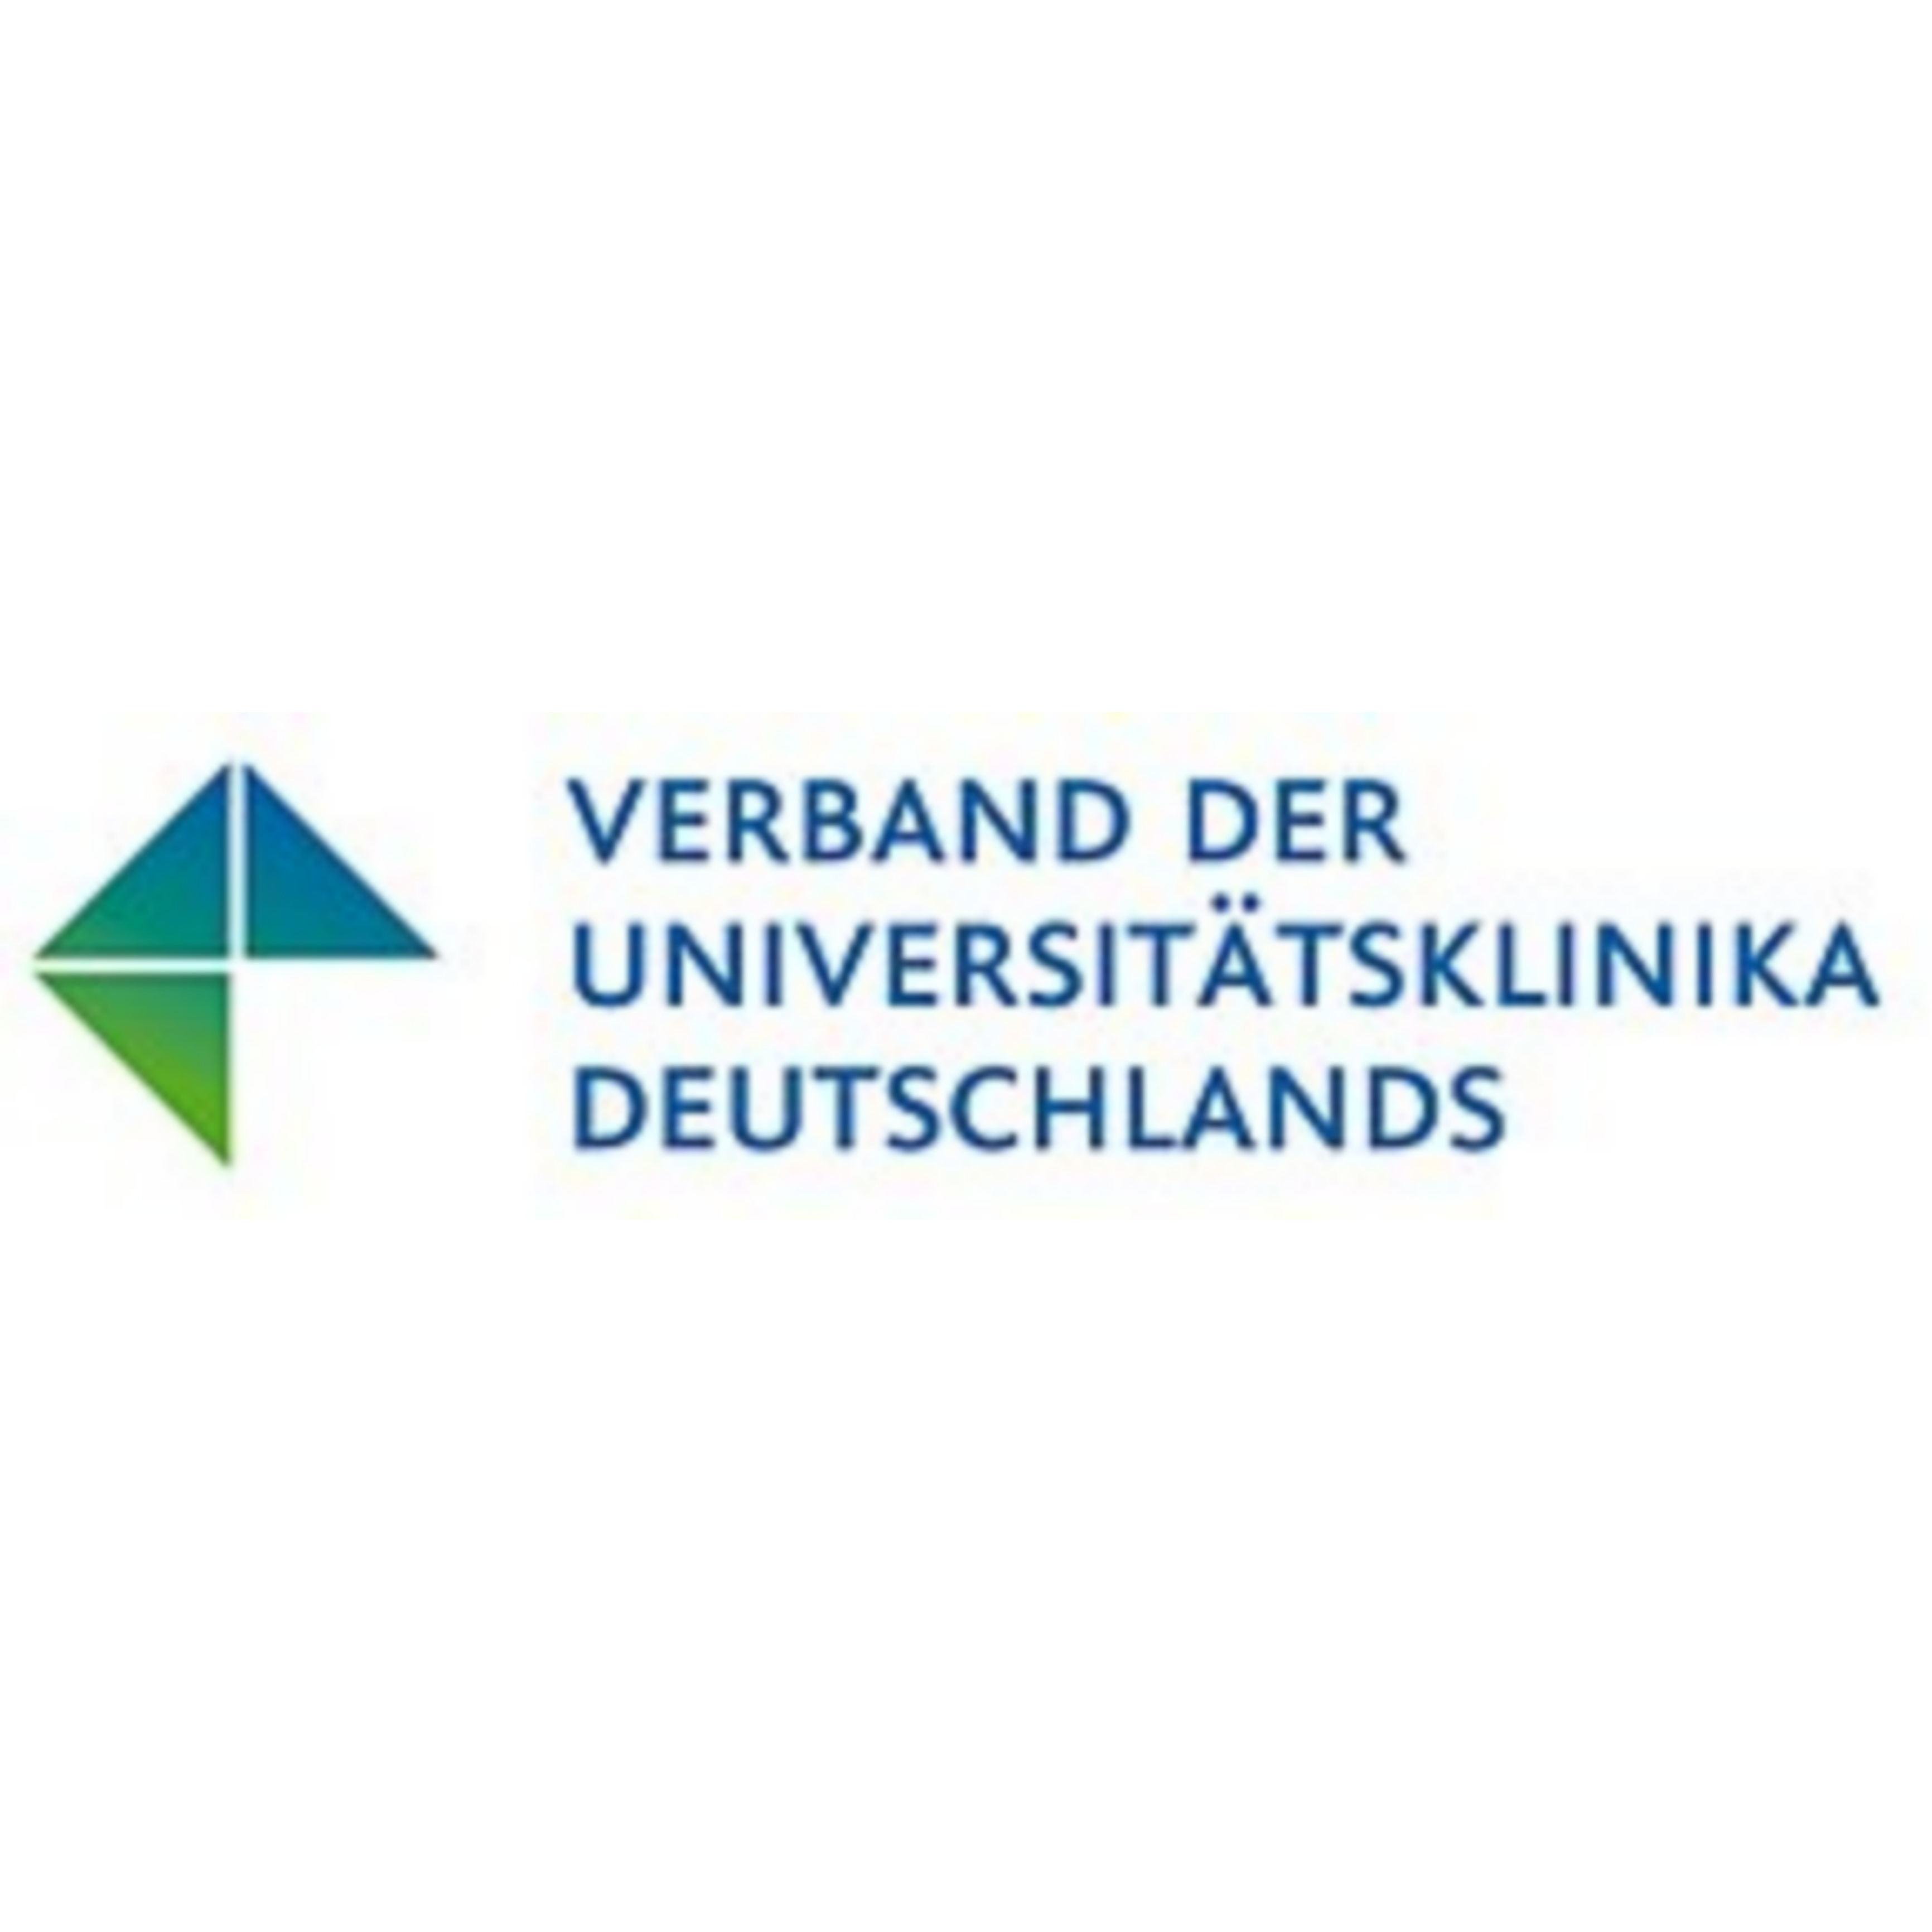 Zu sehen ist das Logo des Verbands der Universitätsklinika Deutschlands. Es handelt sich um eine Wort-Bild-Marke in den Farben grün und blau.